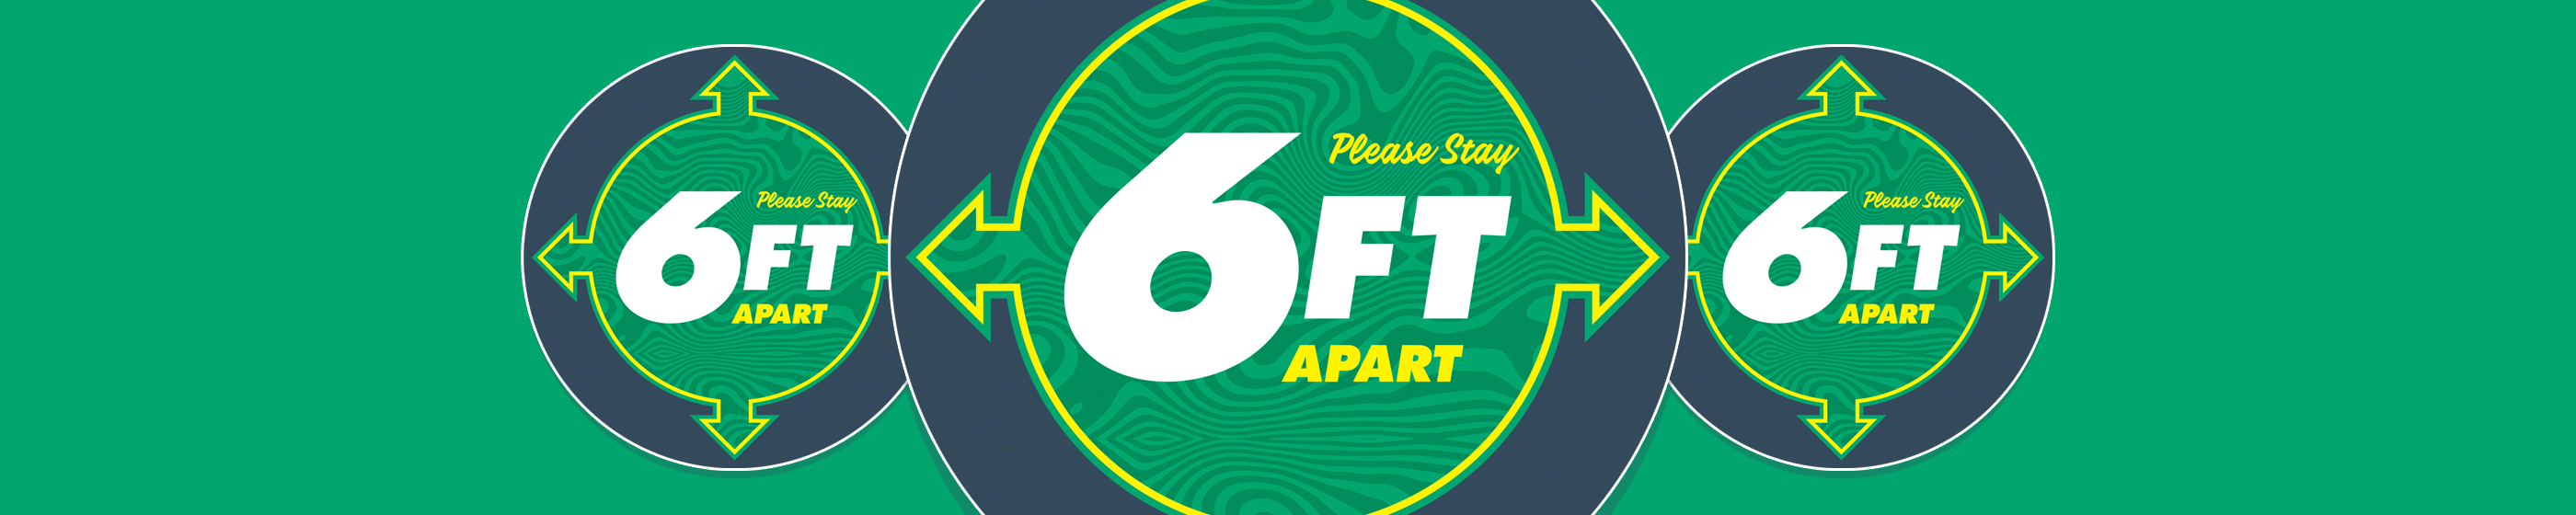 6ft Apart Vinyl Sticker (Green) Cover Image